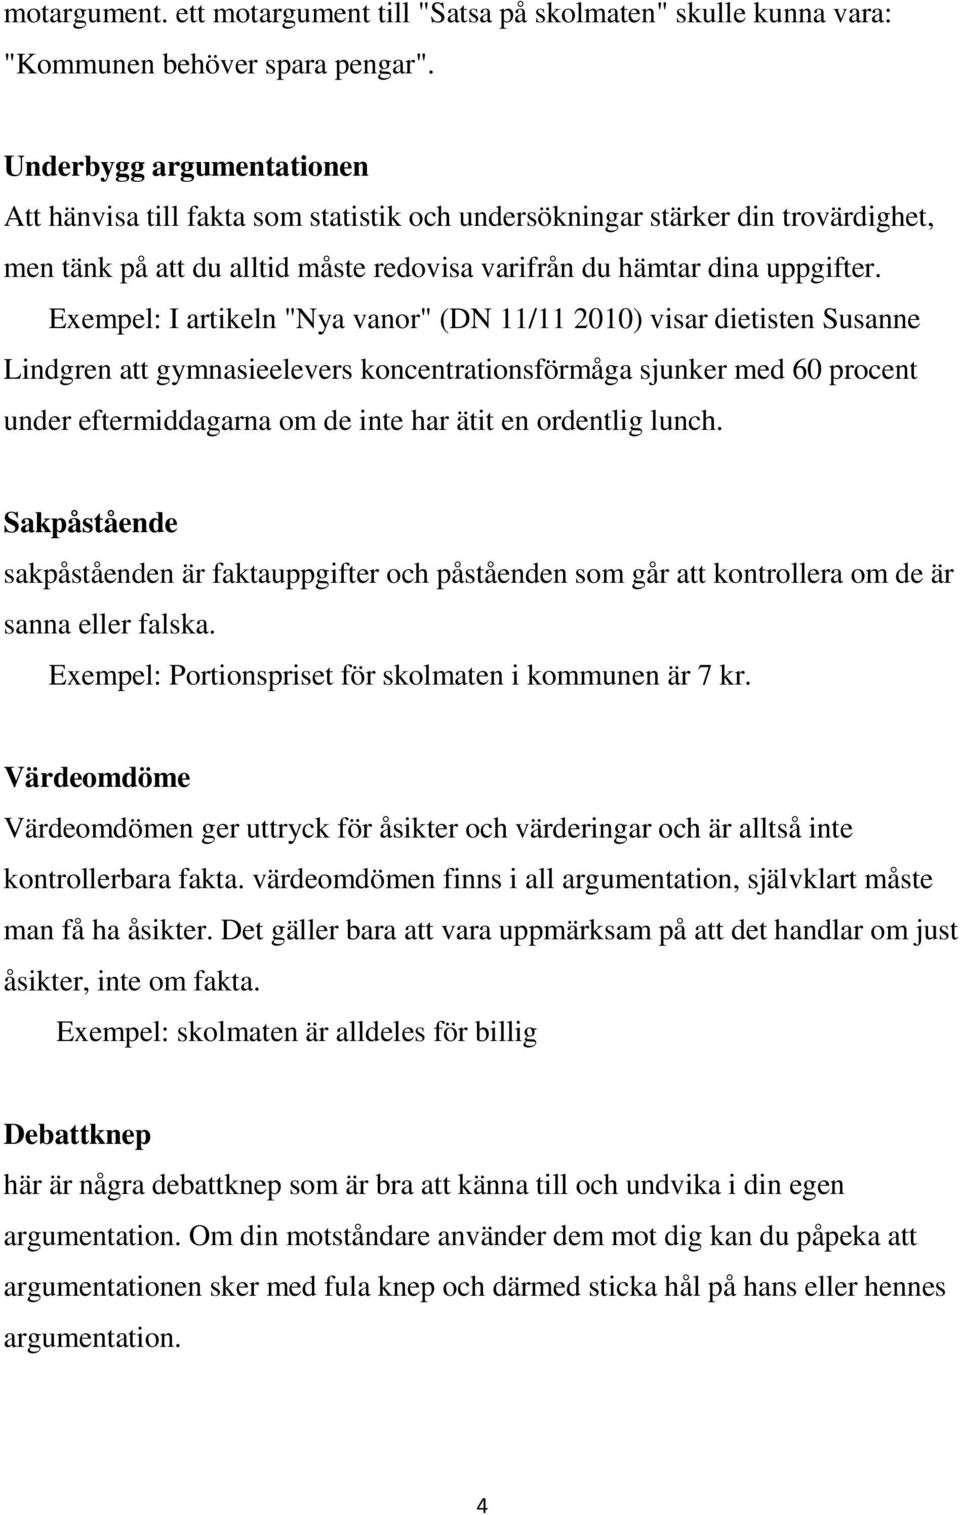 Exempel: I artikeln "Nya vanor" (DN 11/11 2010) visar dietisten Susanne Lindgren att gymnasieelevers koncentrationsförmåga sjunker med 60 procent under eftermiddagarna om de inte har ätit en